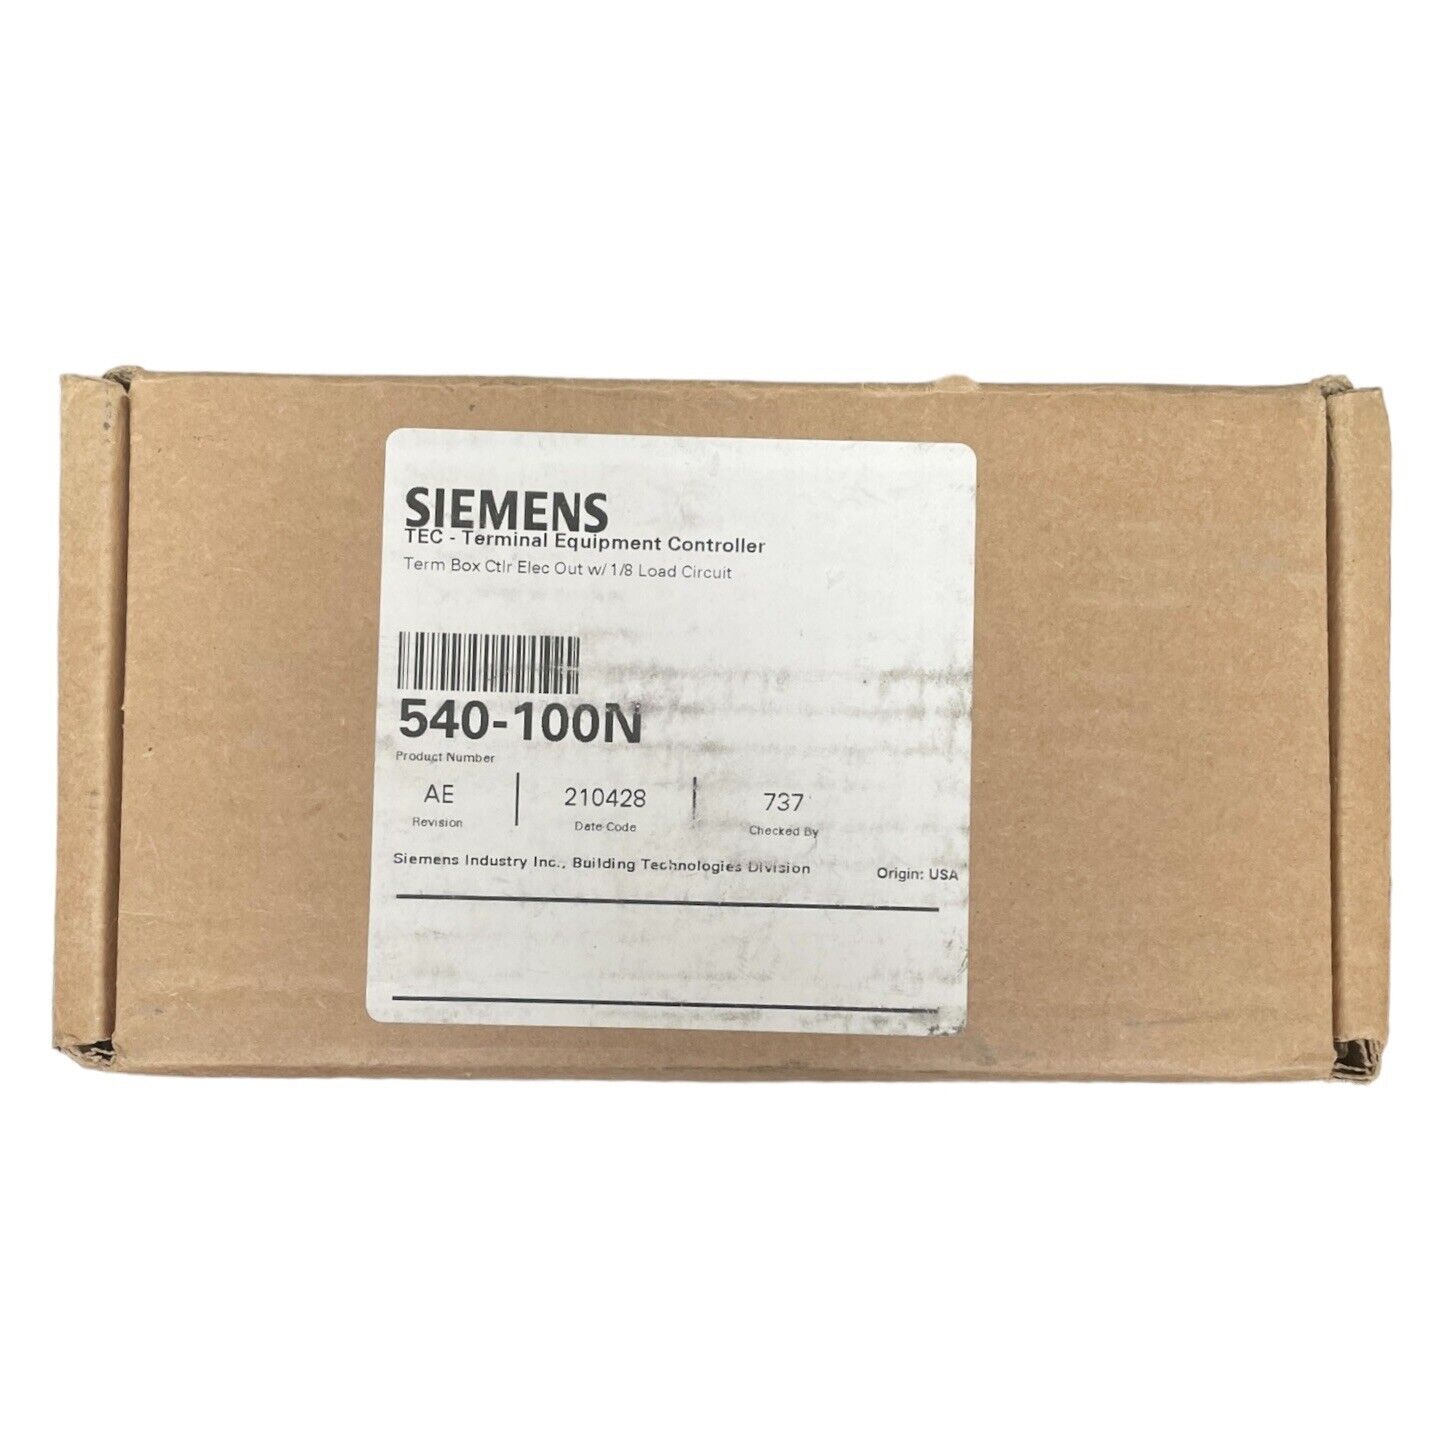 SIEMENS TEC 540-100N Terminal Equipment Controller